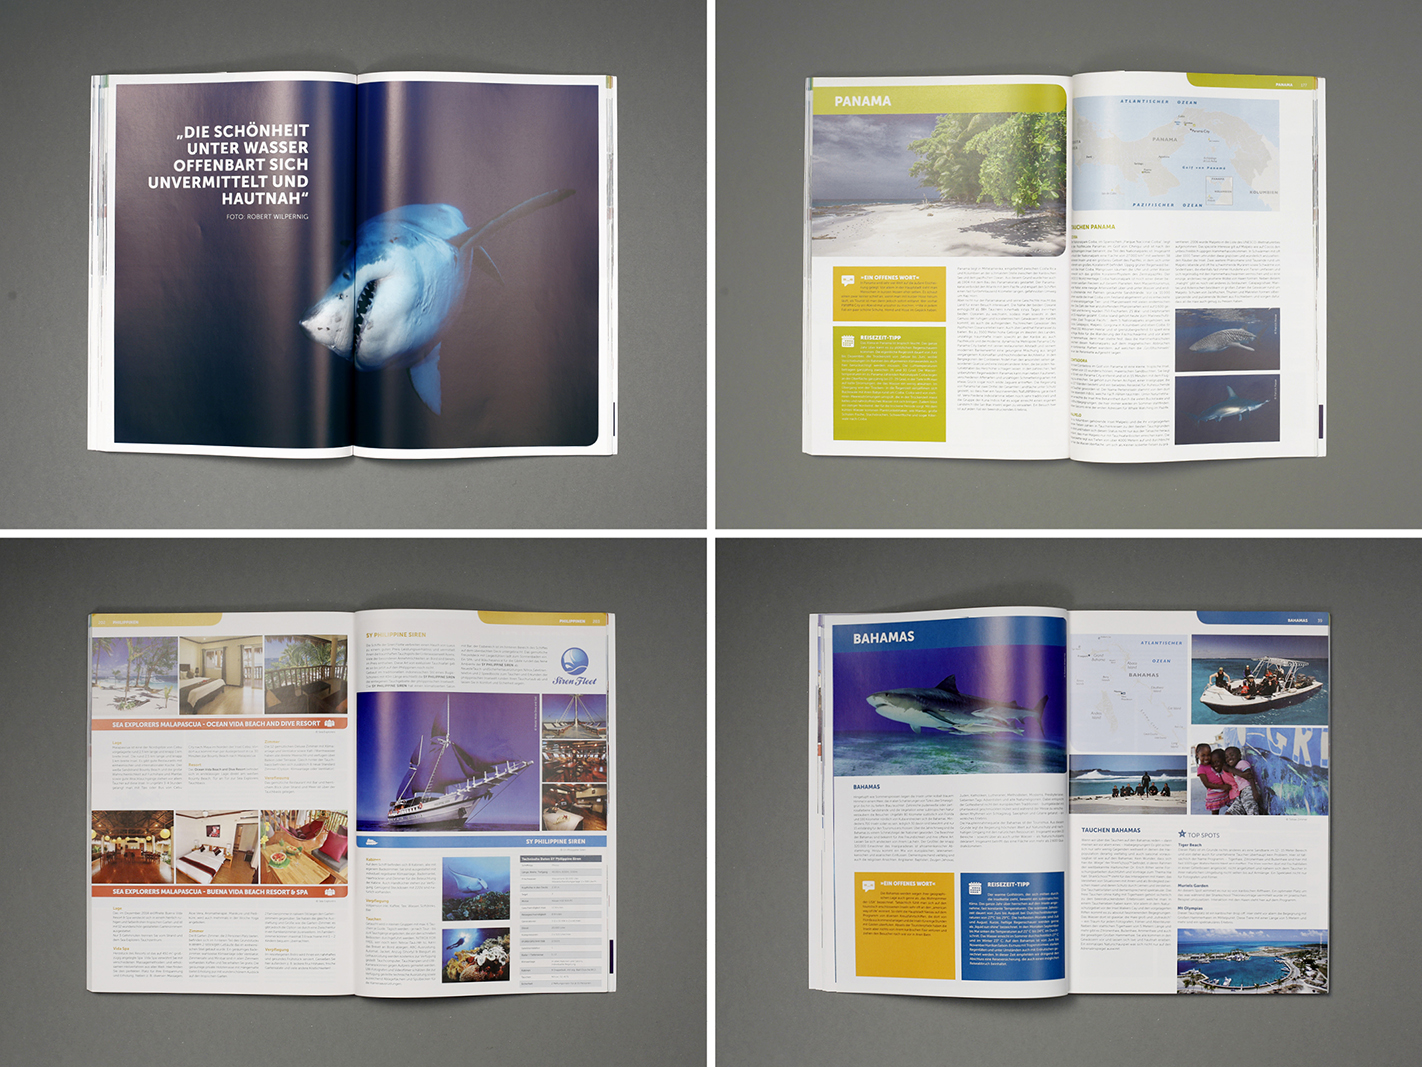 ATK-WIRO-DIVE-Tauchen-Reisen-Katalog-Editorial-Design-106.jpg